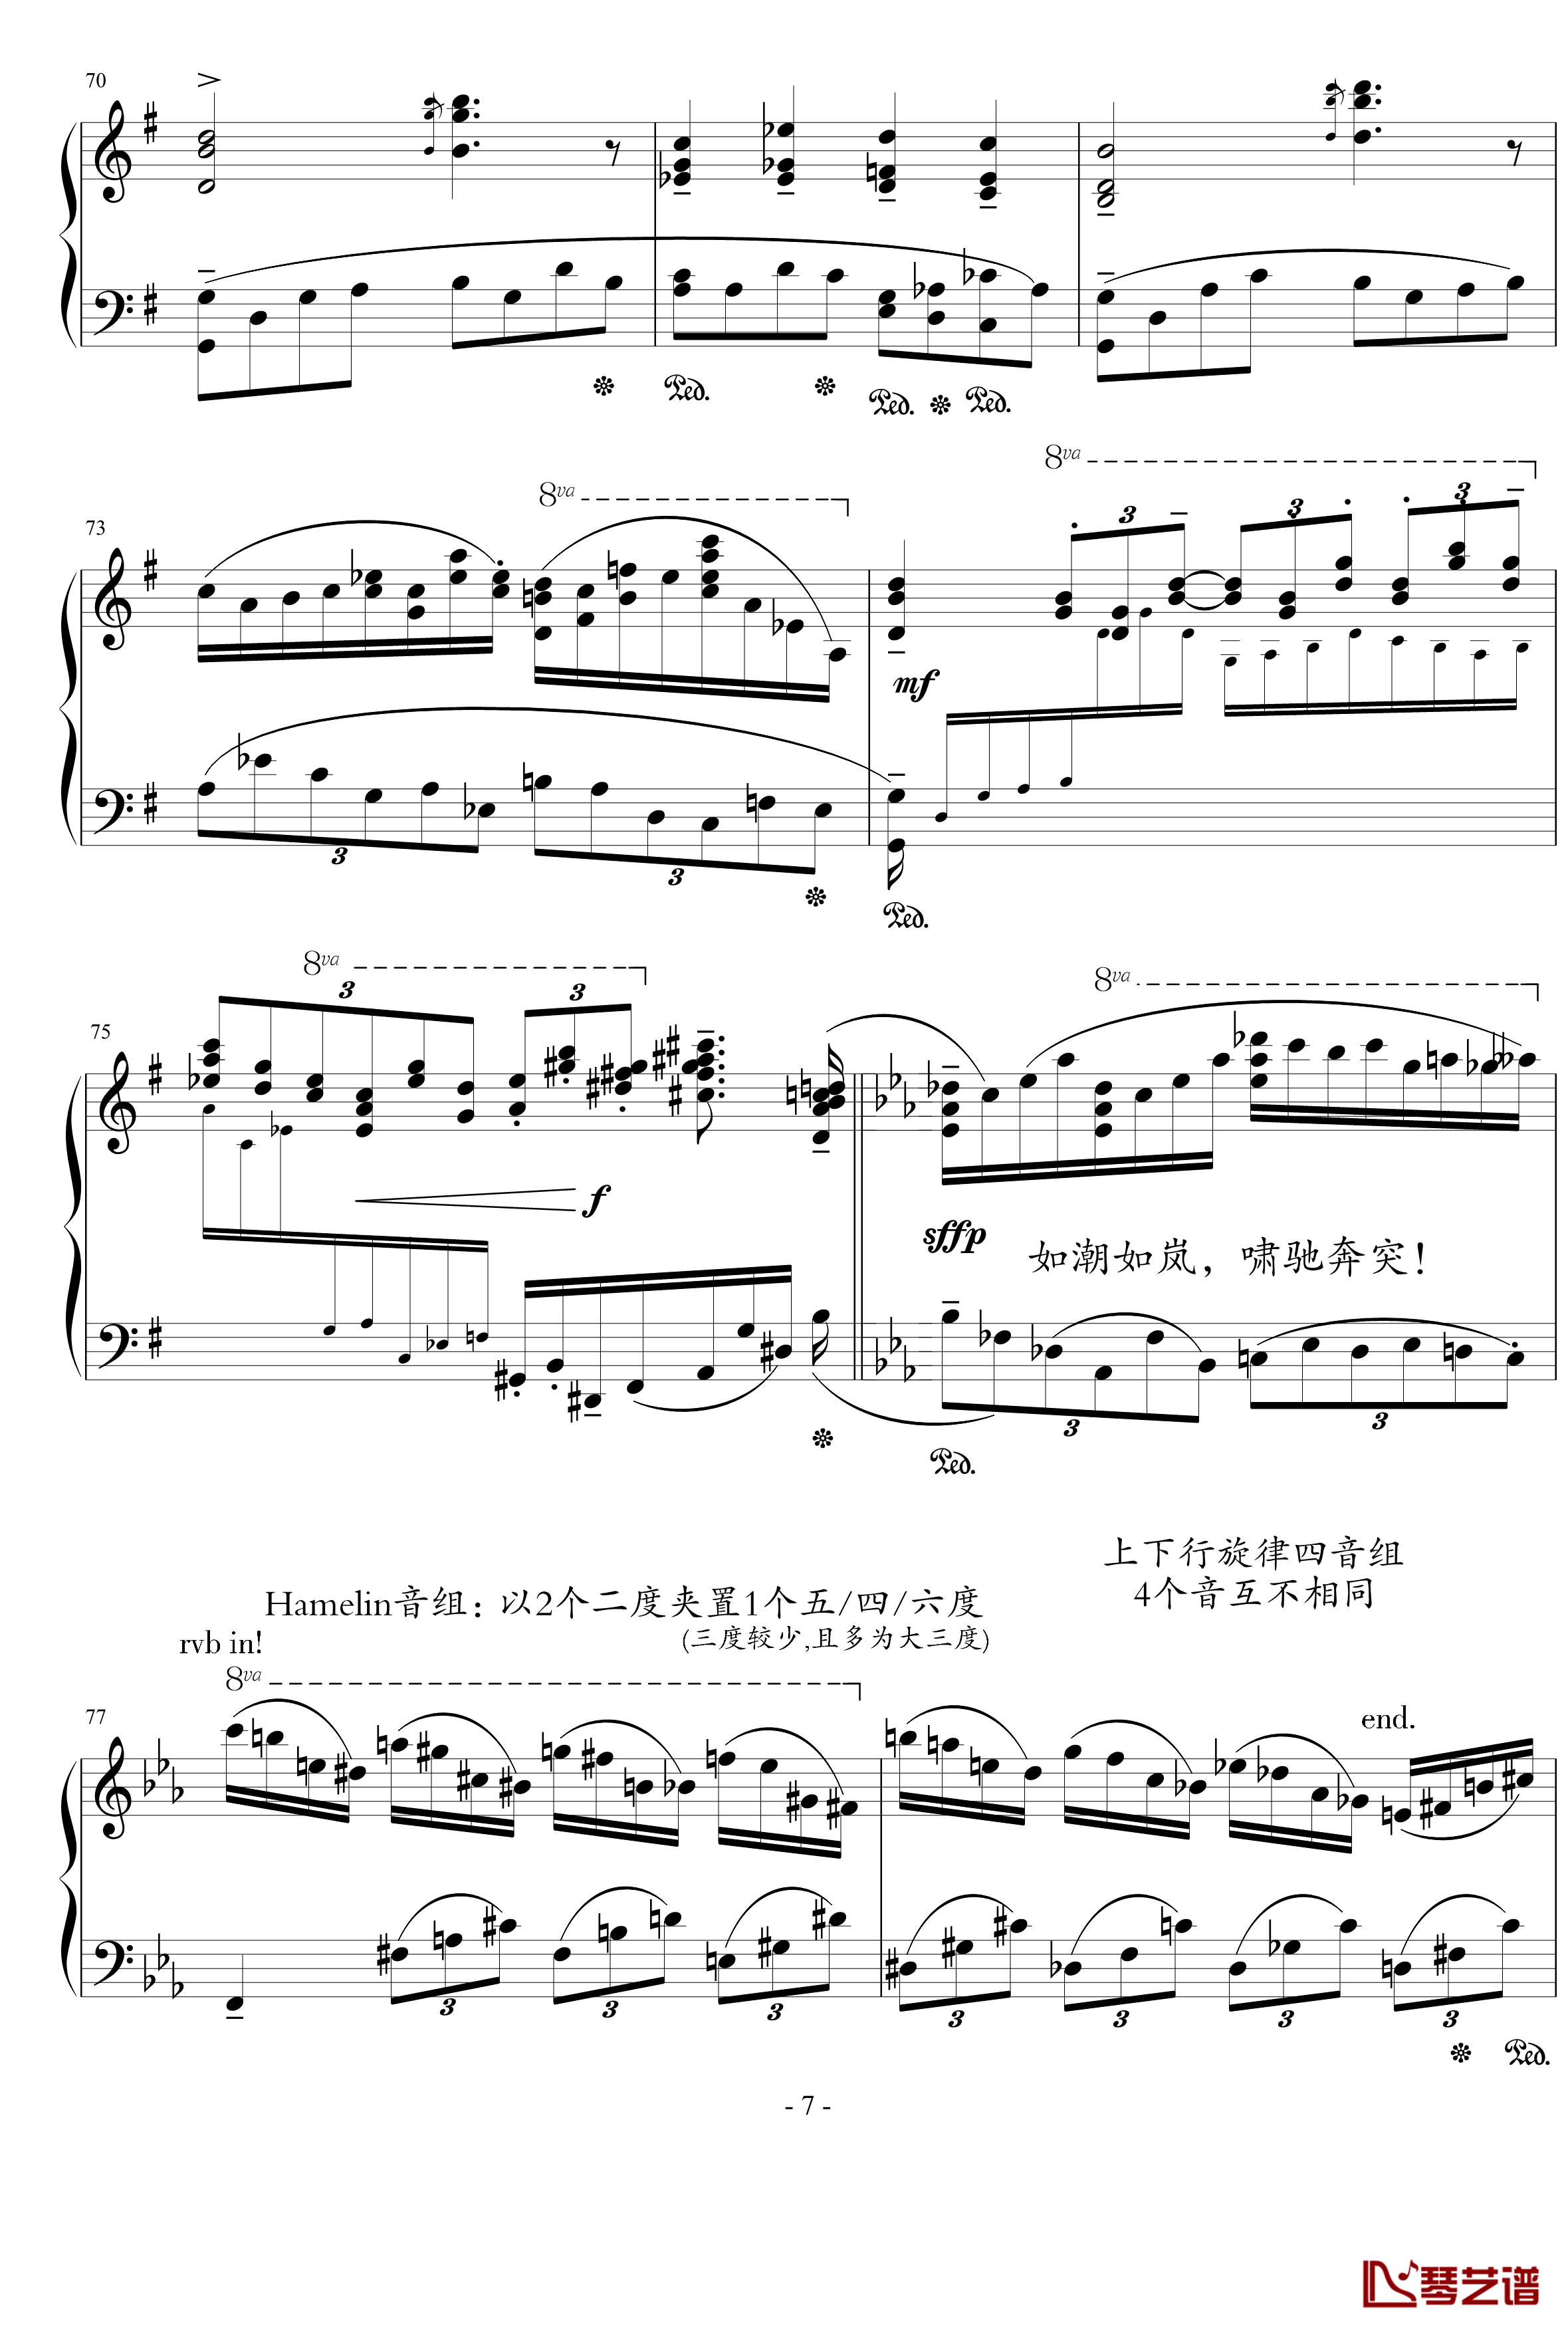  蒙太奇阐释集 钢琴谱-5-流行追梦人